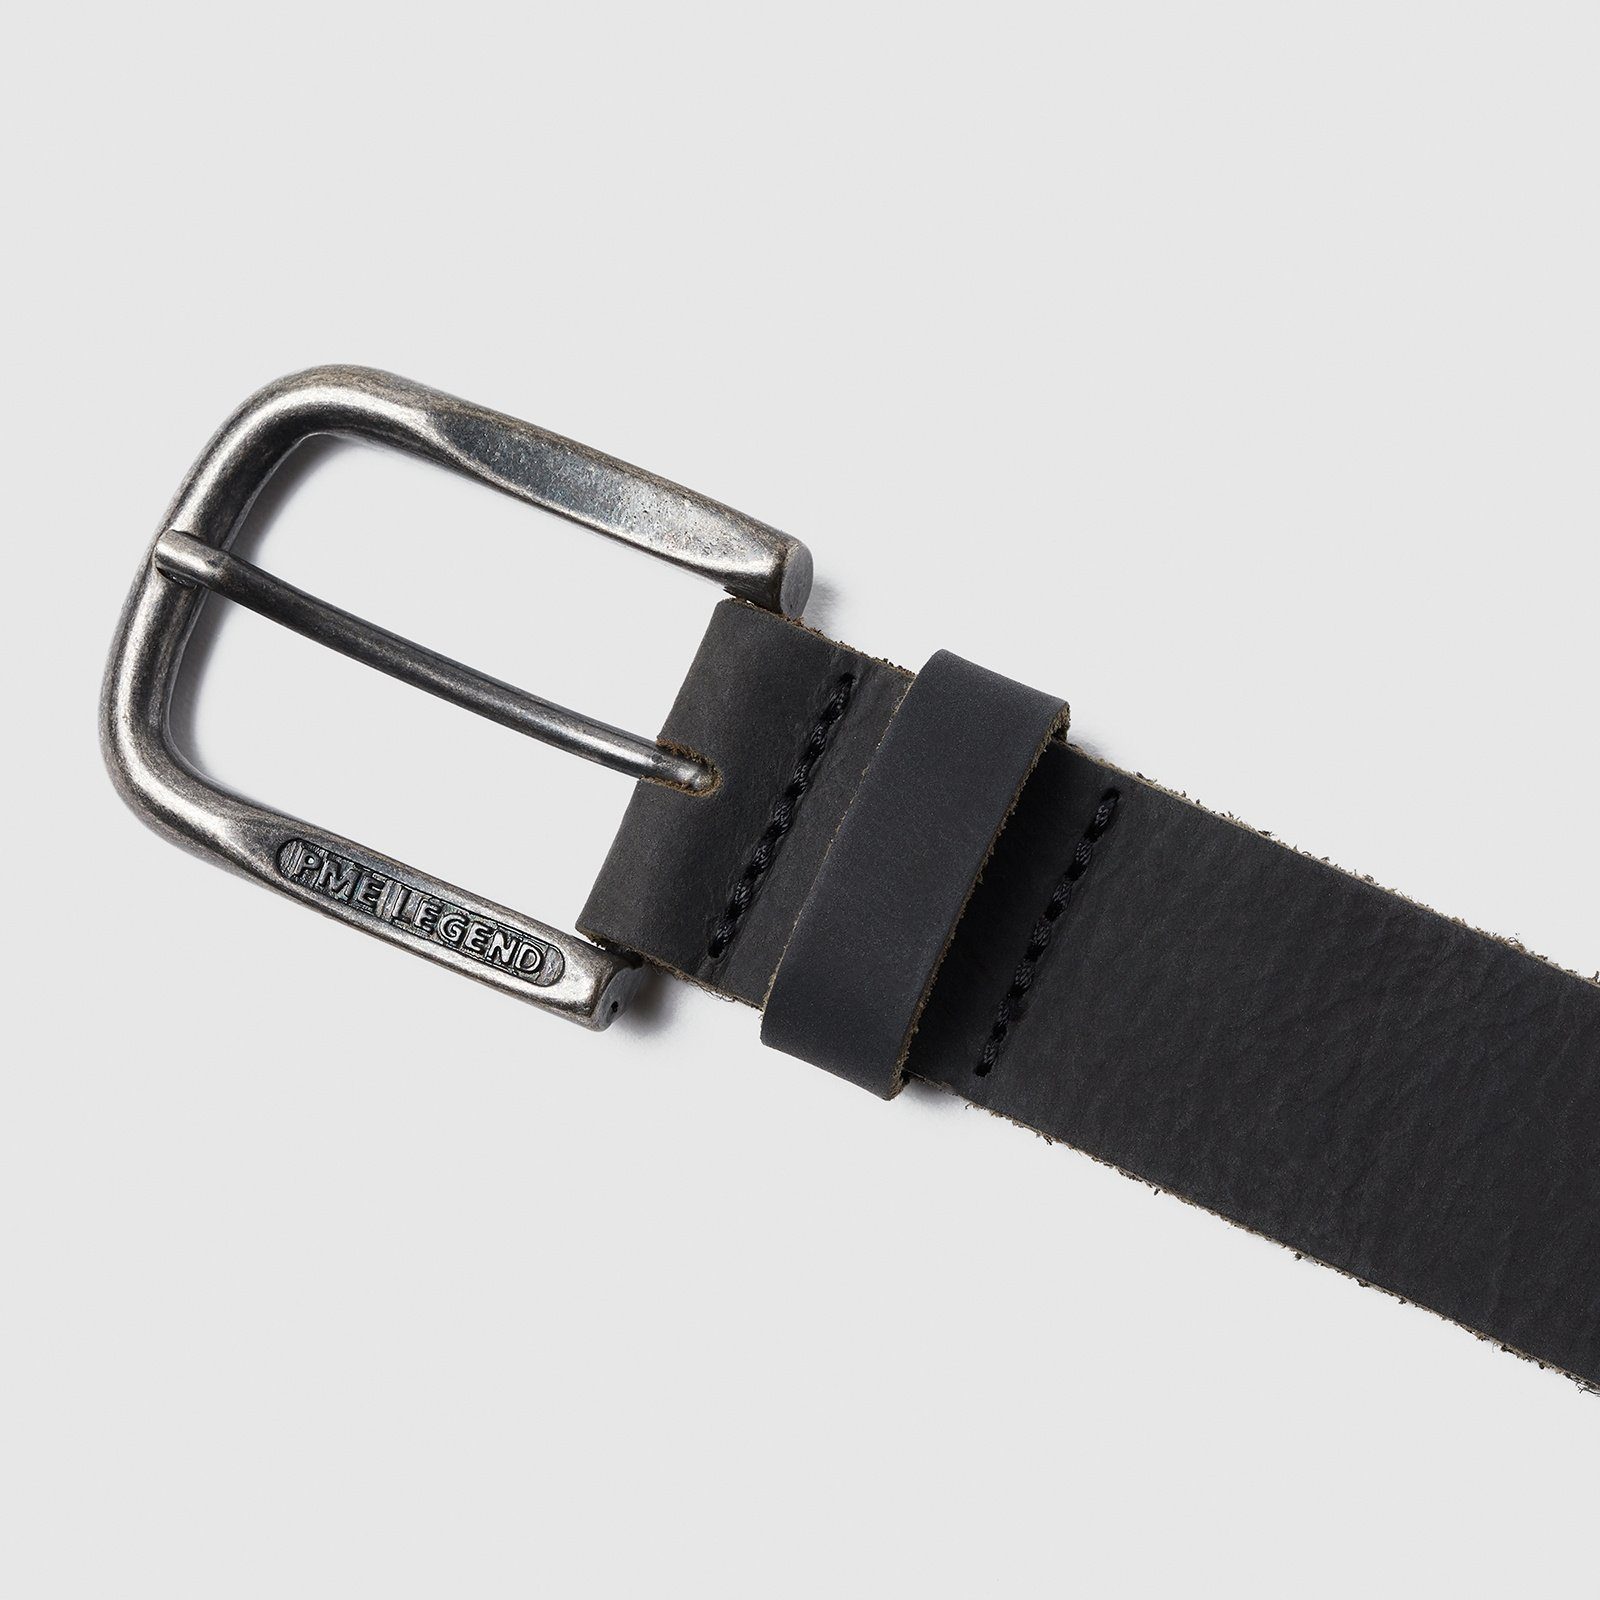 belt black Ledergürtel PME LEGEND Belt Leather